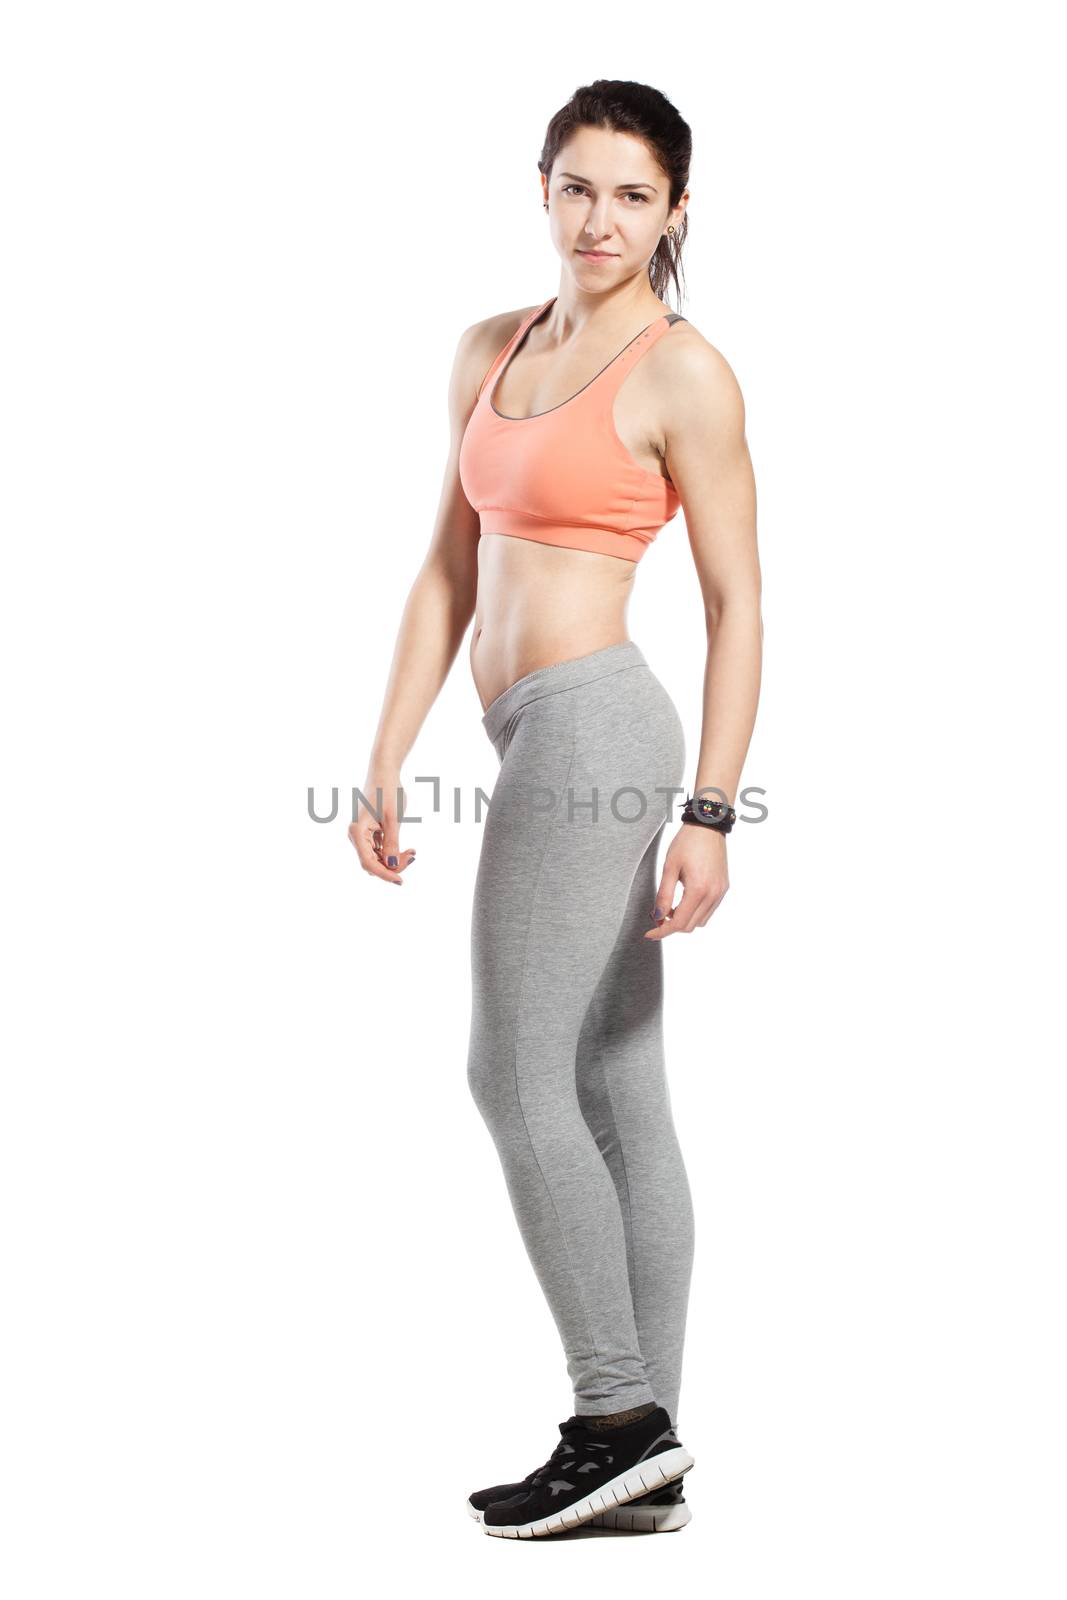 fitness girl posing against white background